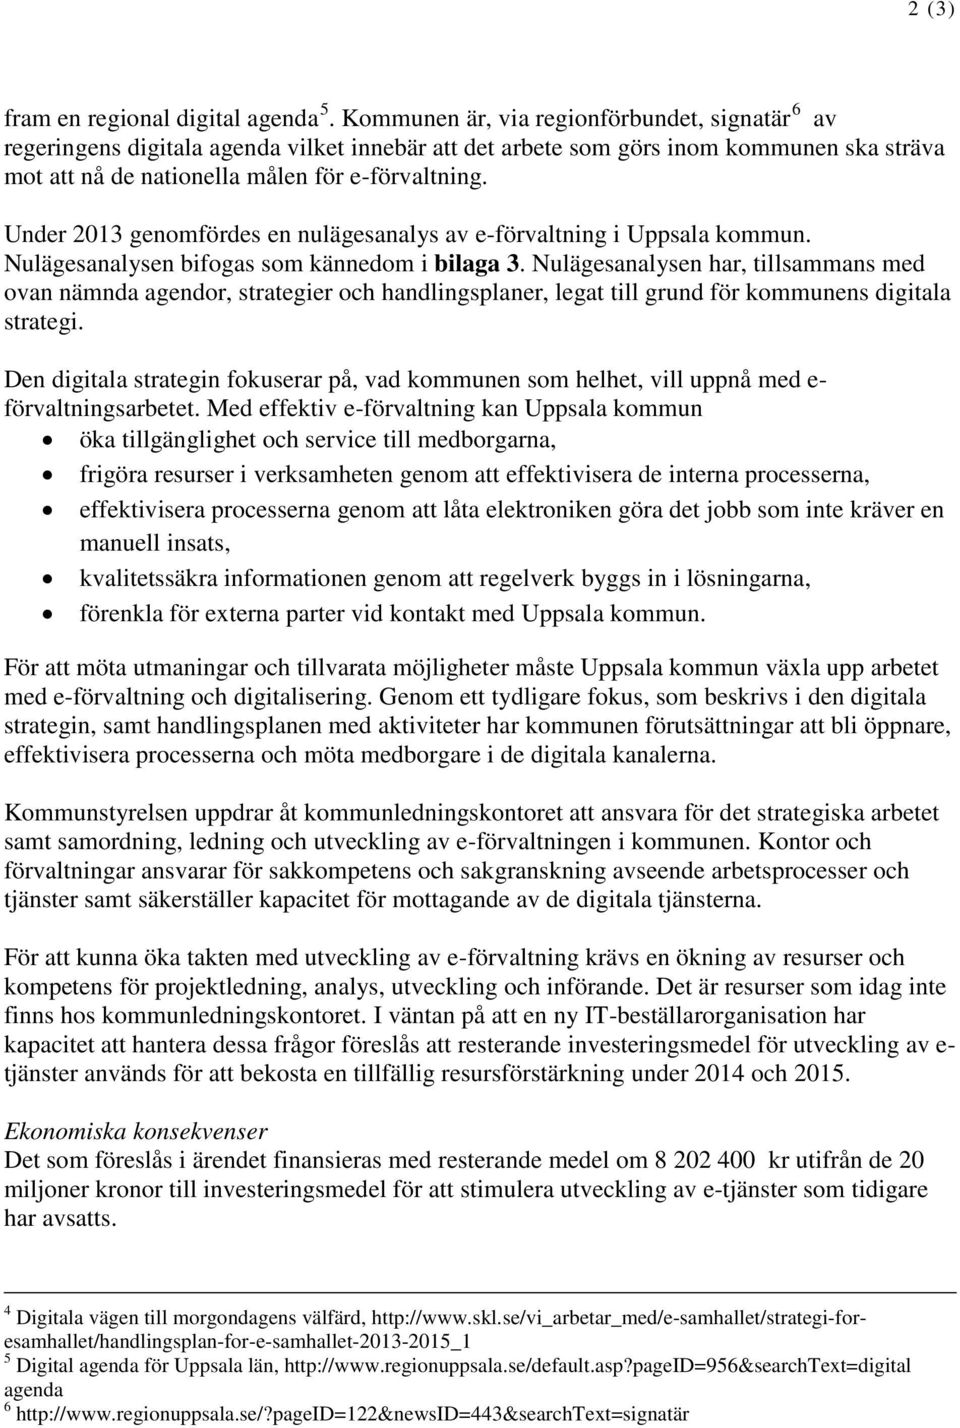 Under 2013 genomfördes en nulägesanalys av e-förvaltning i Uppsala kommun. Nulägesanalysen bifogas som kännedom i bilaga 3.